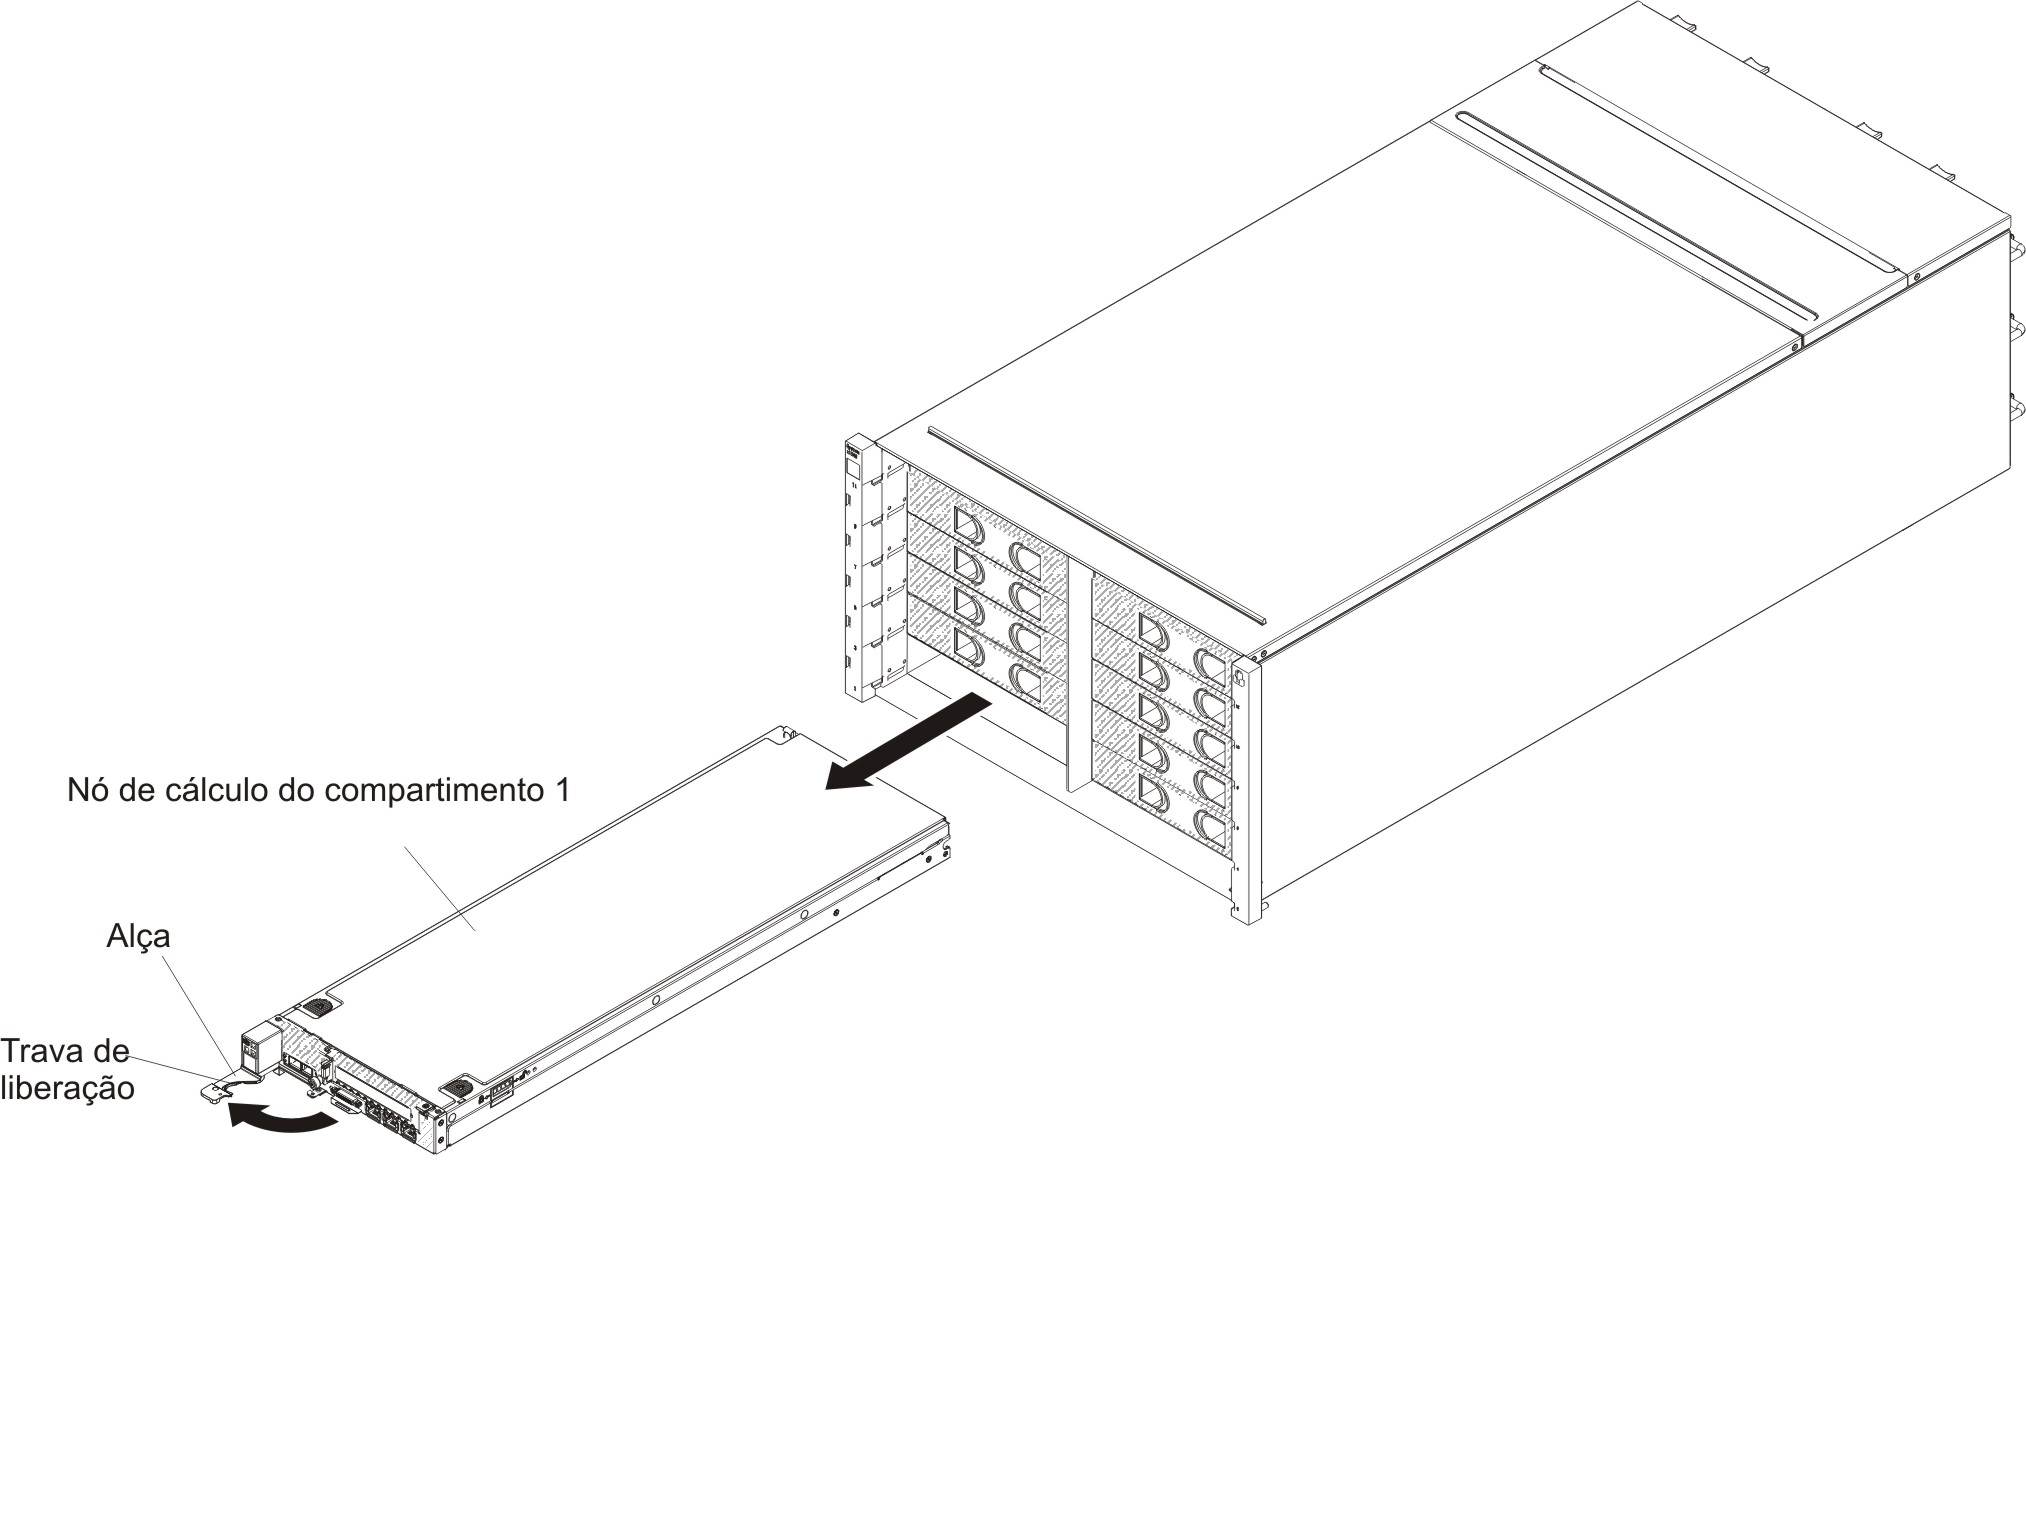 Ilustração mostrando a remoção de um compartimento 1nó de cálculo